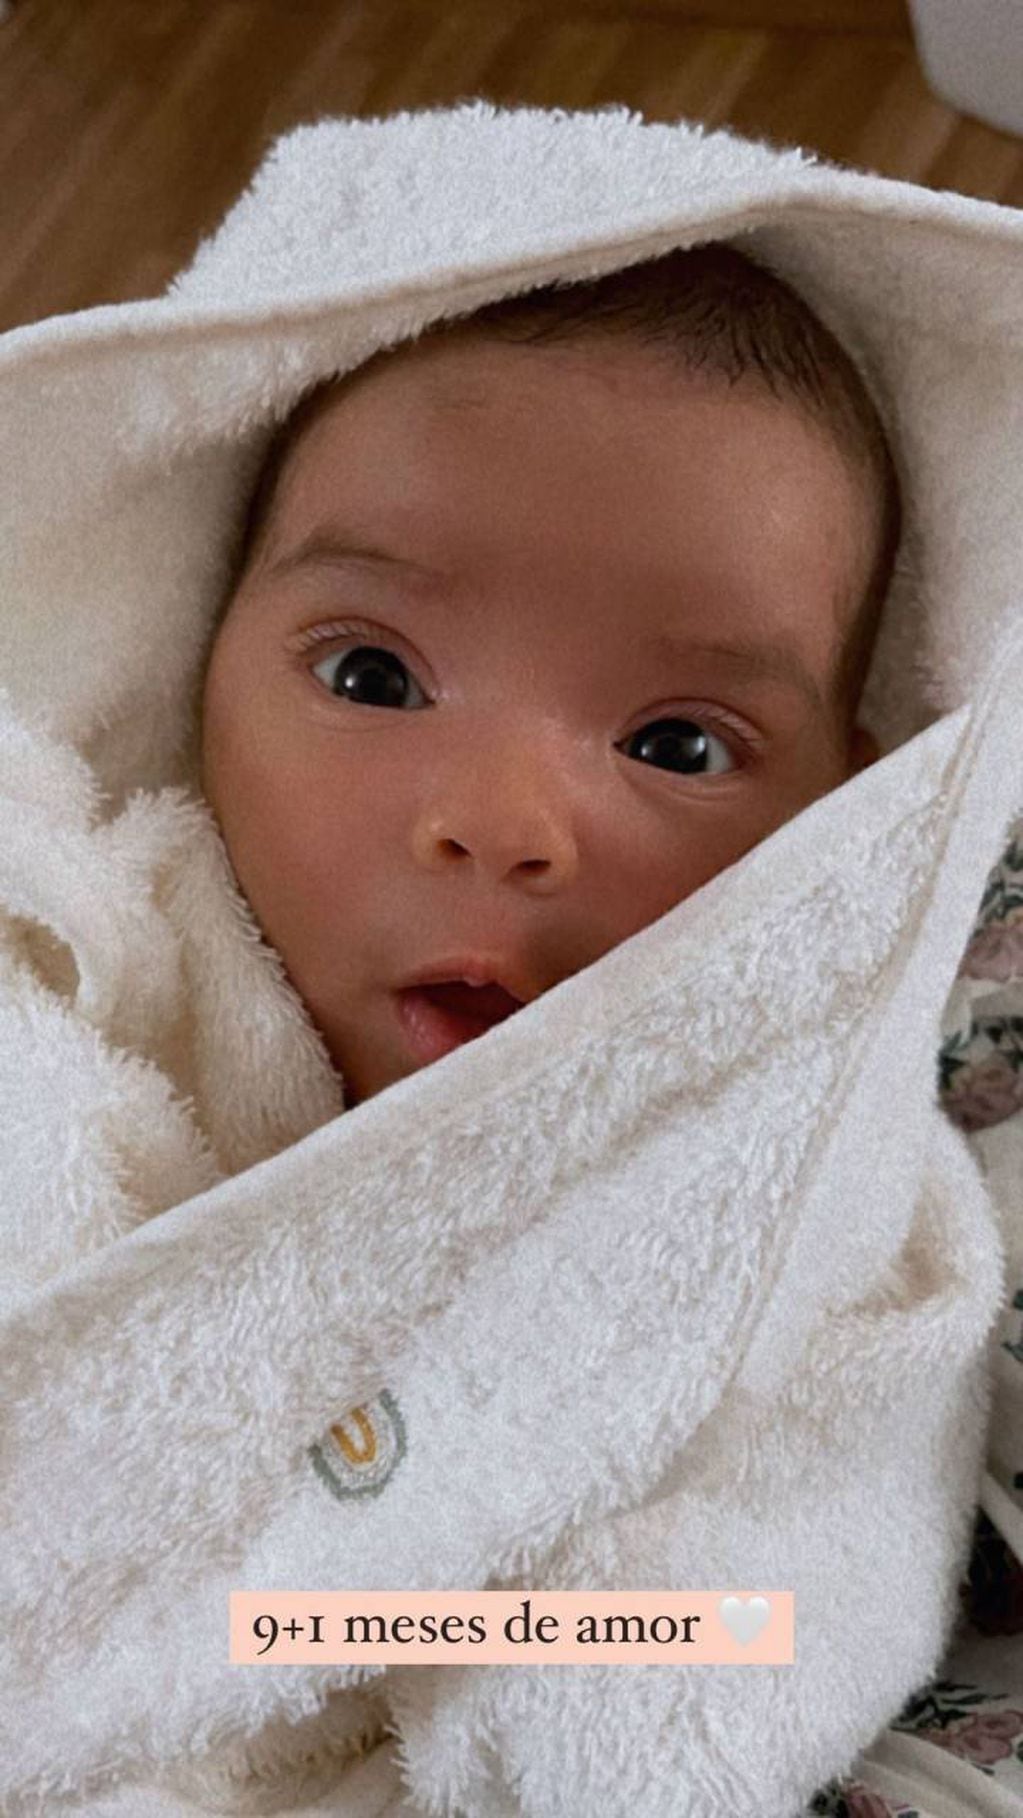 La rosarina compartió una foto hermosa de su beba envuelta en una toalla.